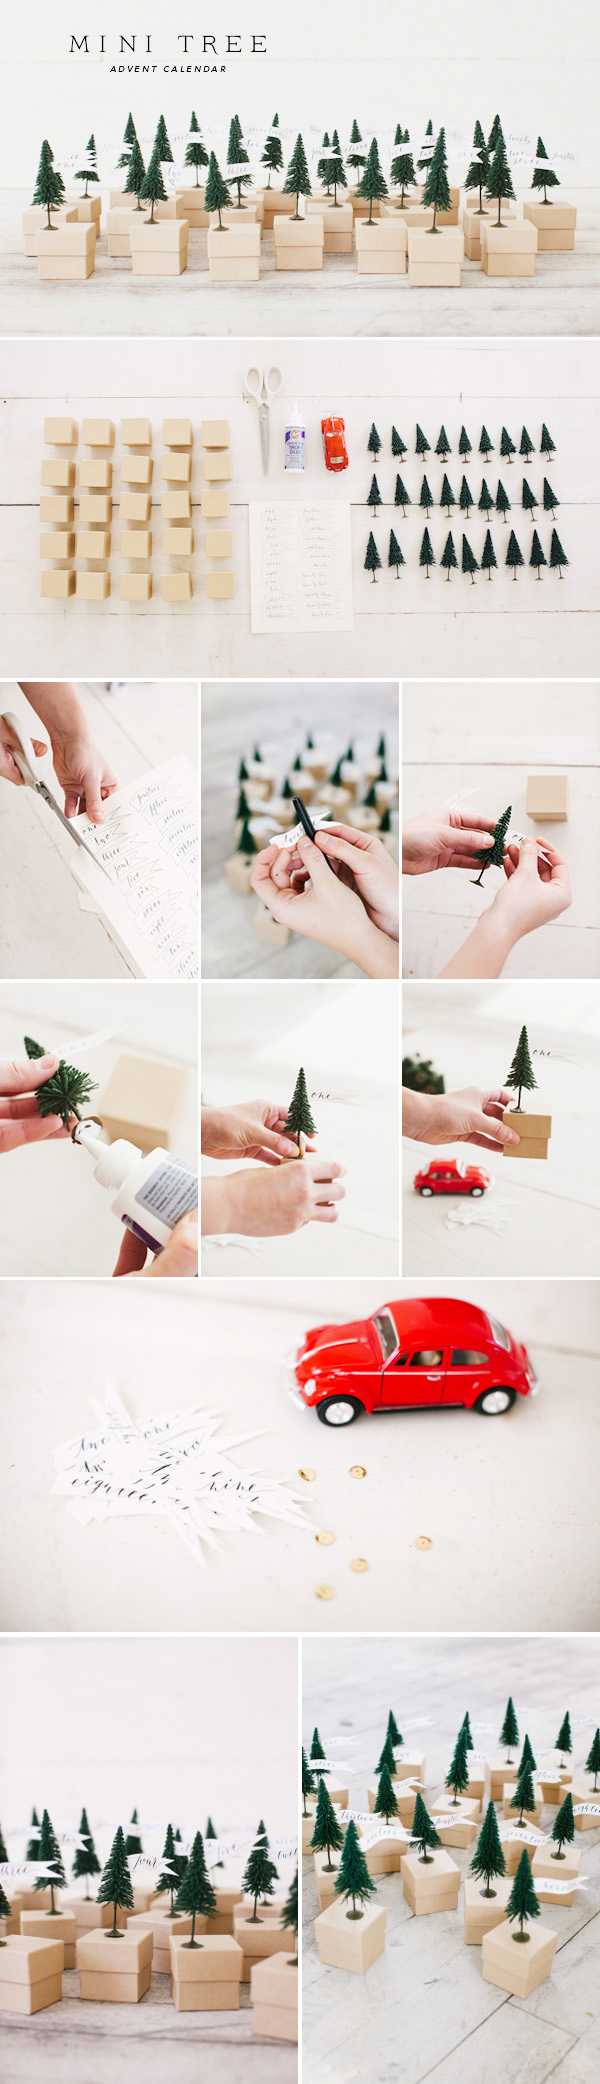 adventskalender basteln ideen mini boxen weihnachtsbaum